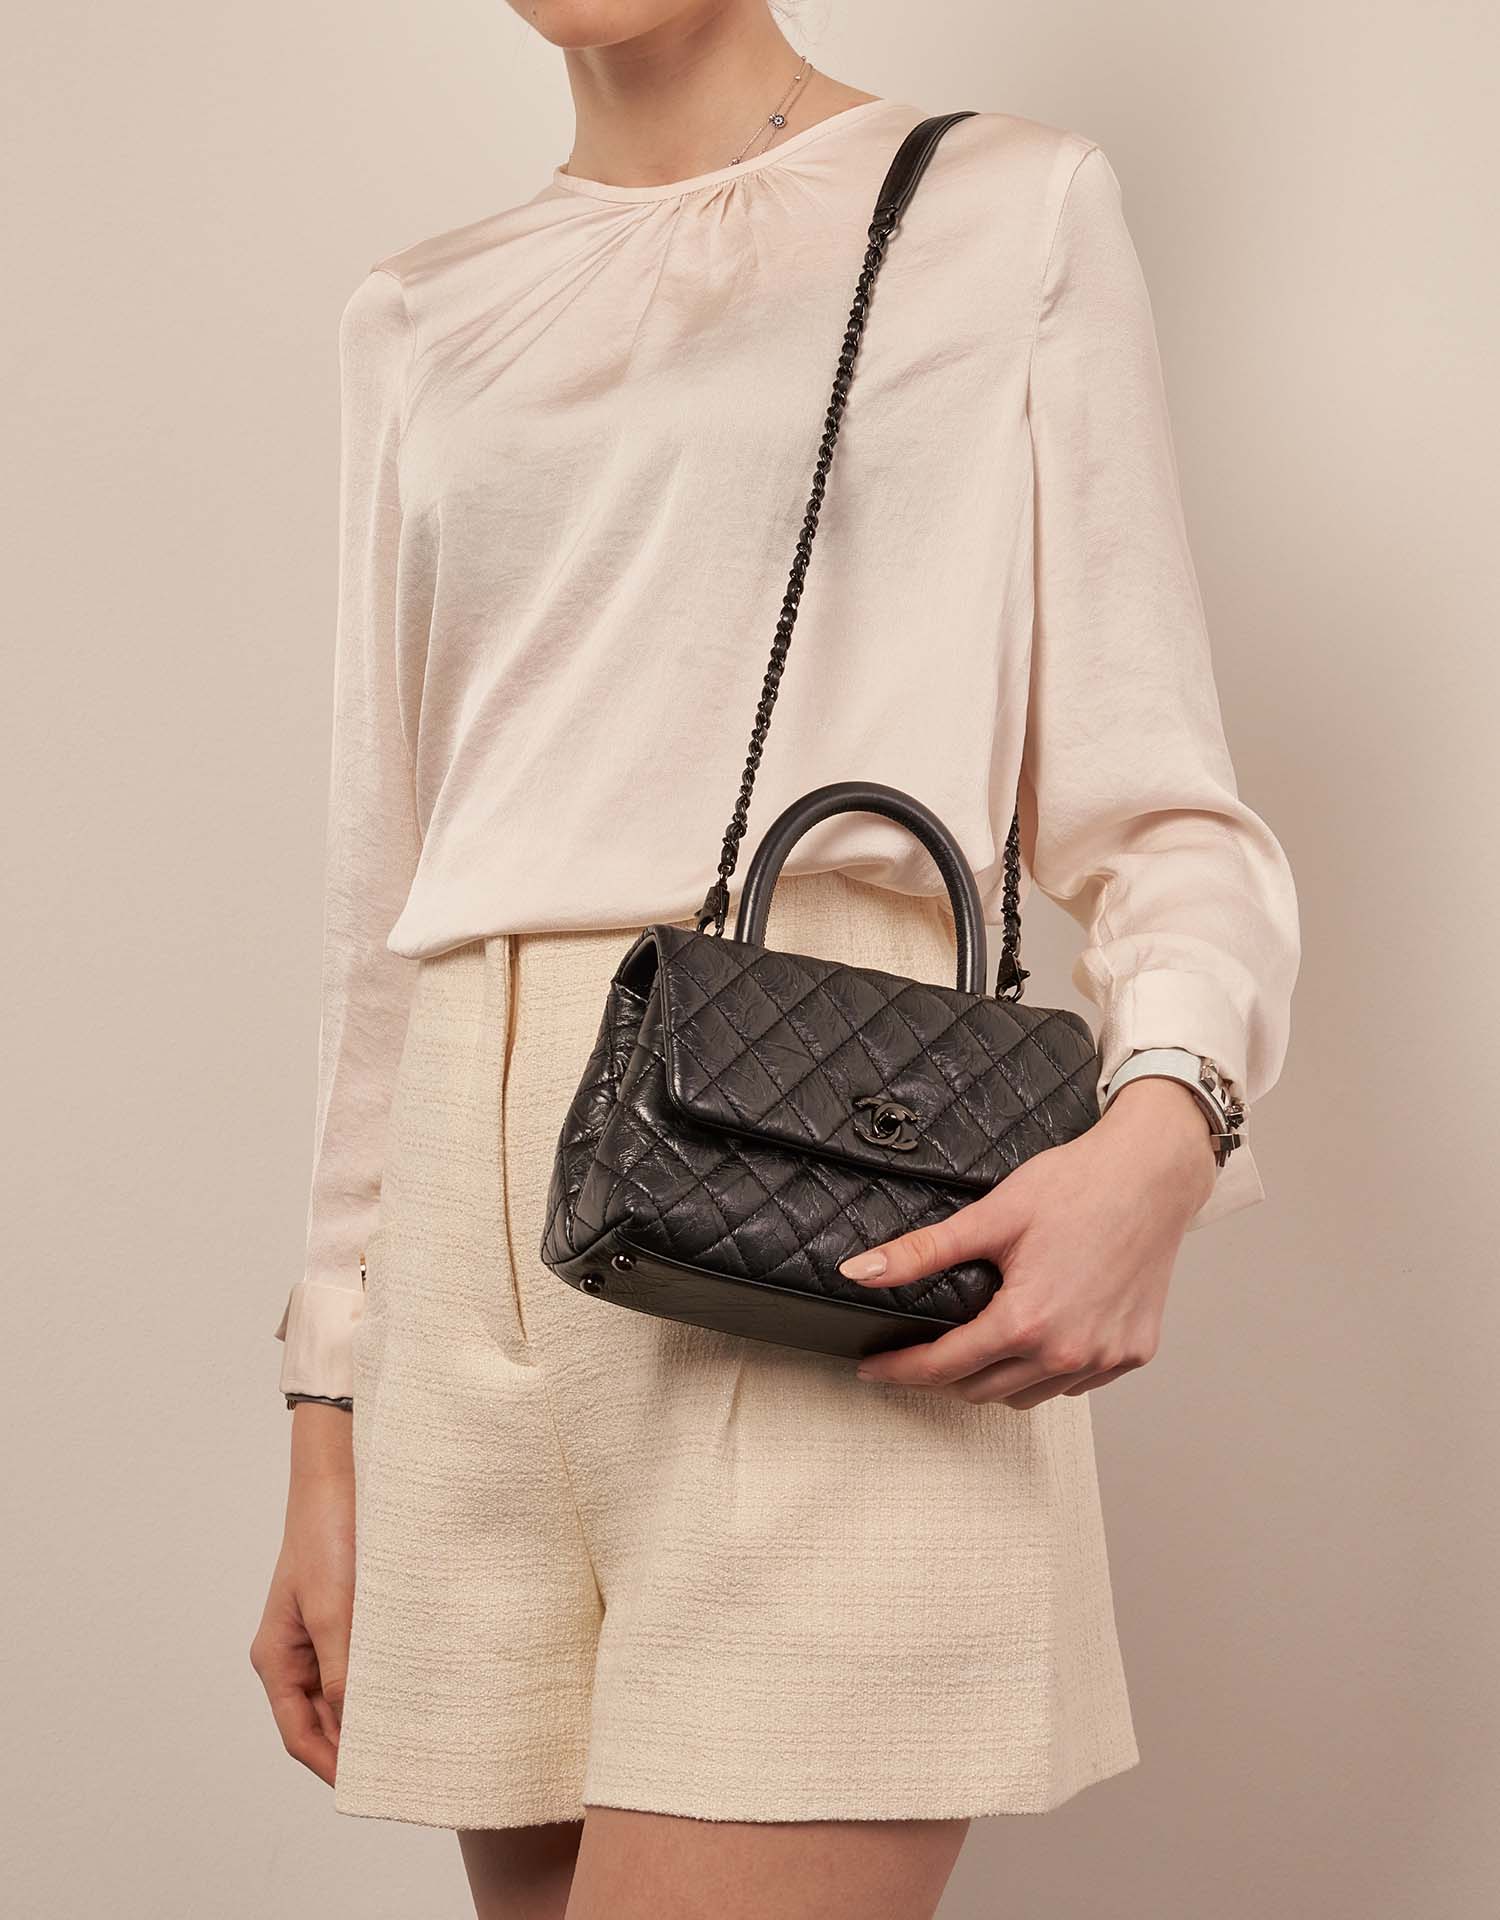 Chanel TimelessHandle Small Black 1M | Verkaufen Sie Ihre Designer-Tasche auf Saclab.com